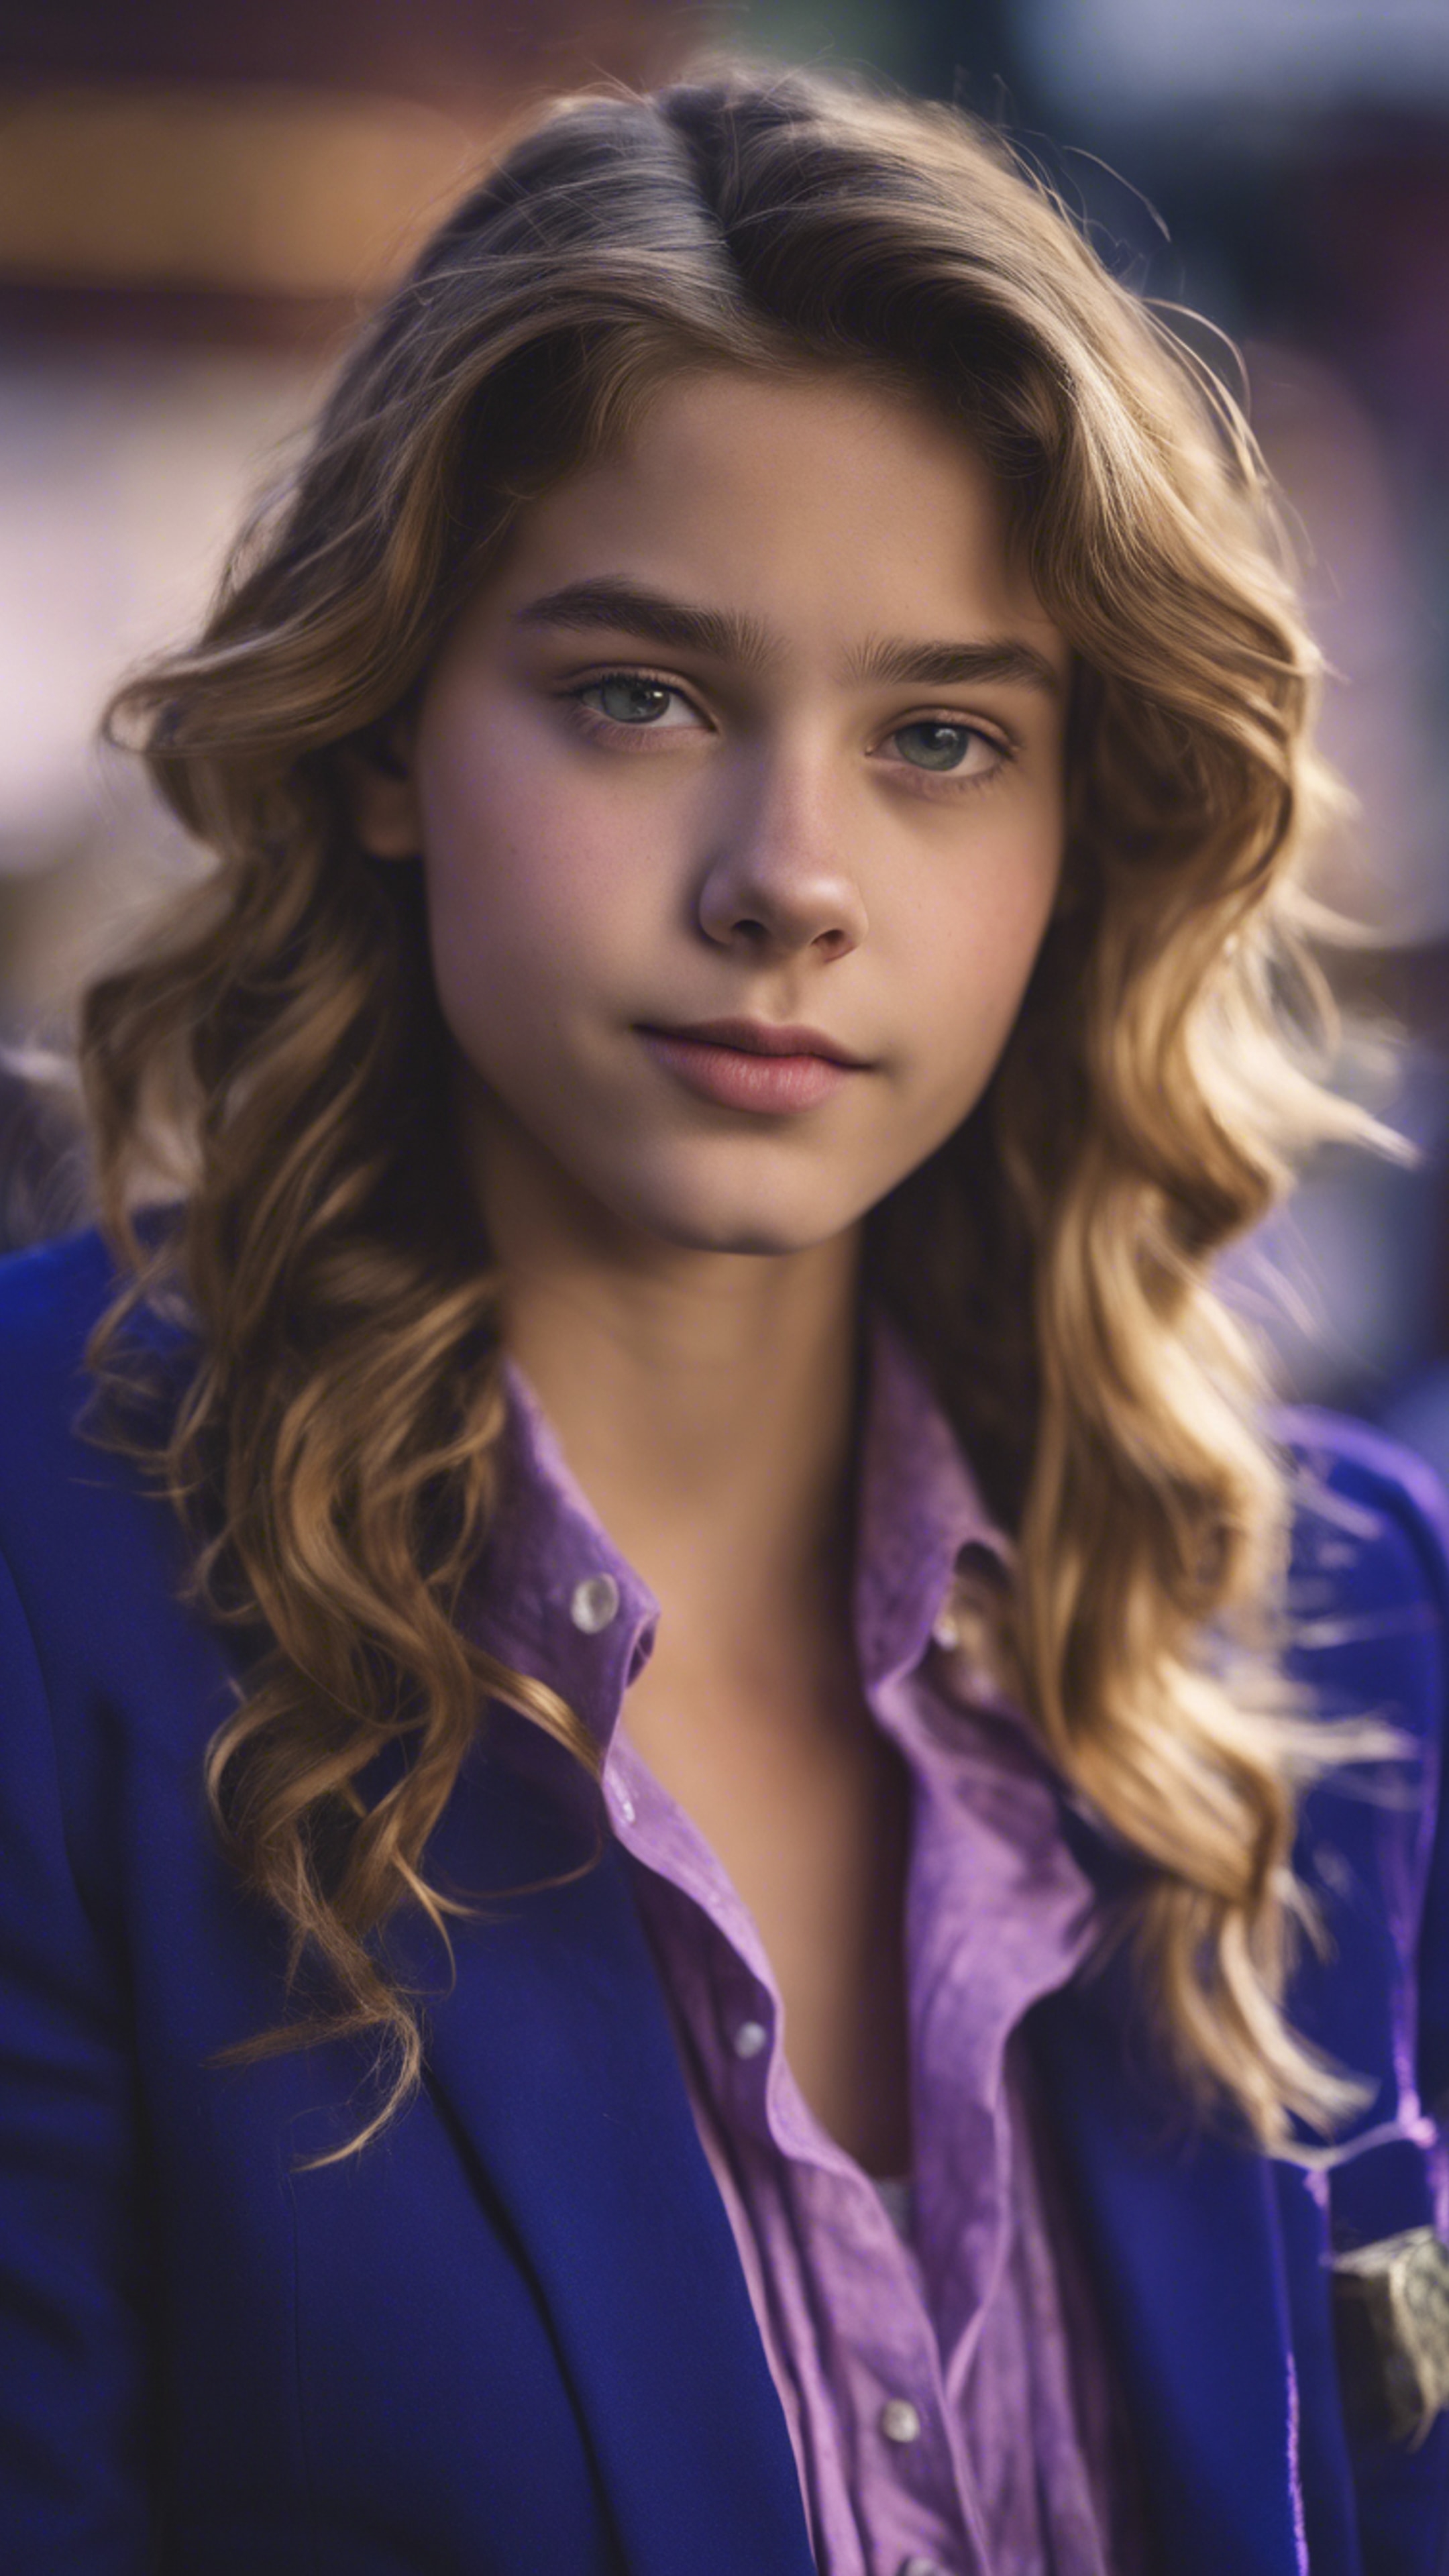 A preppy teenage girl wearing a royal blue blazer with purple button-down shirt.壁紙[785e4ff270ea4e79b652]